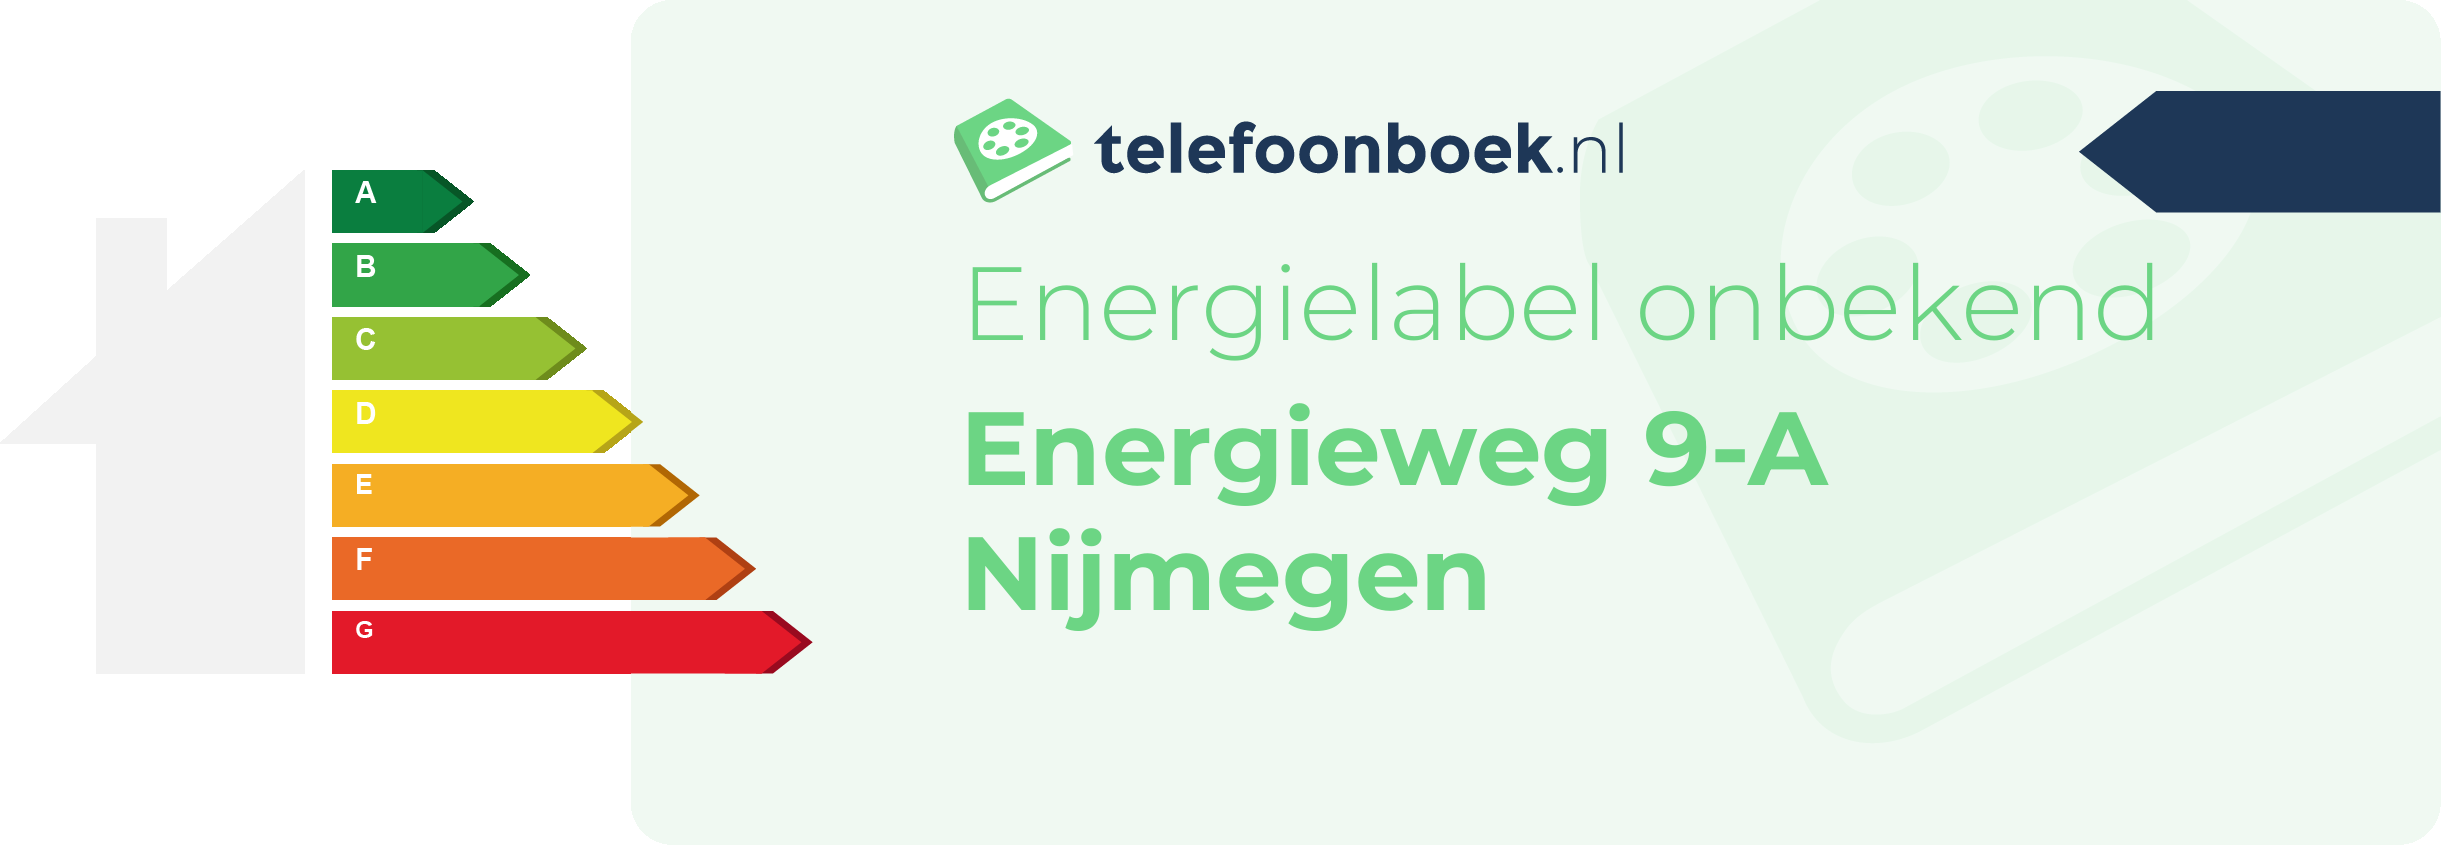 Energielabel Energieweg 9-A Nijmegen